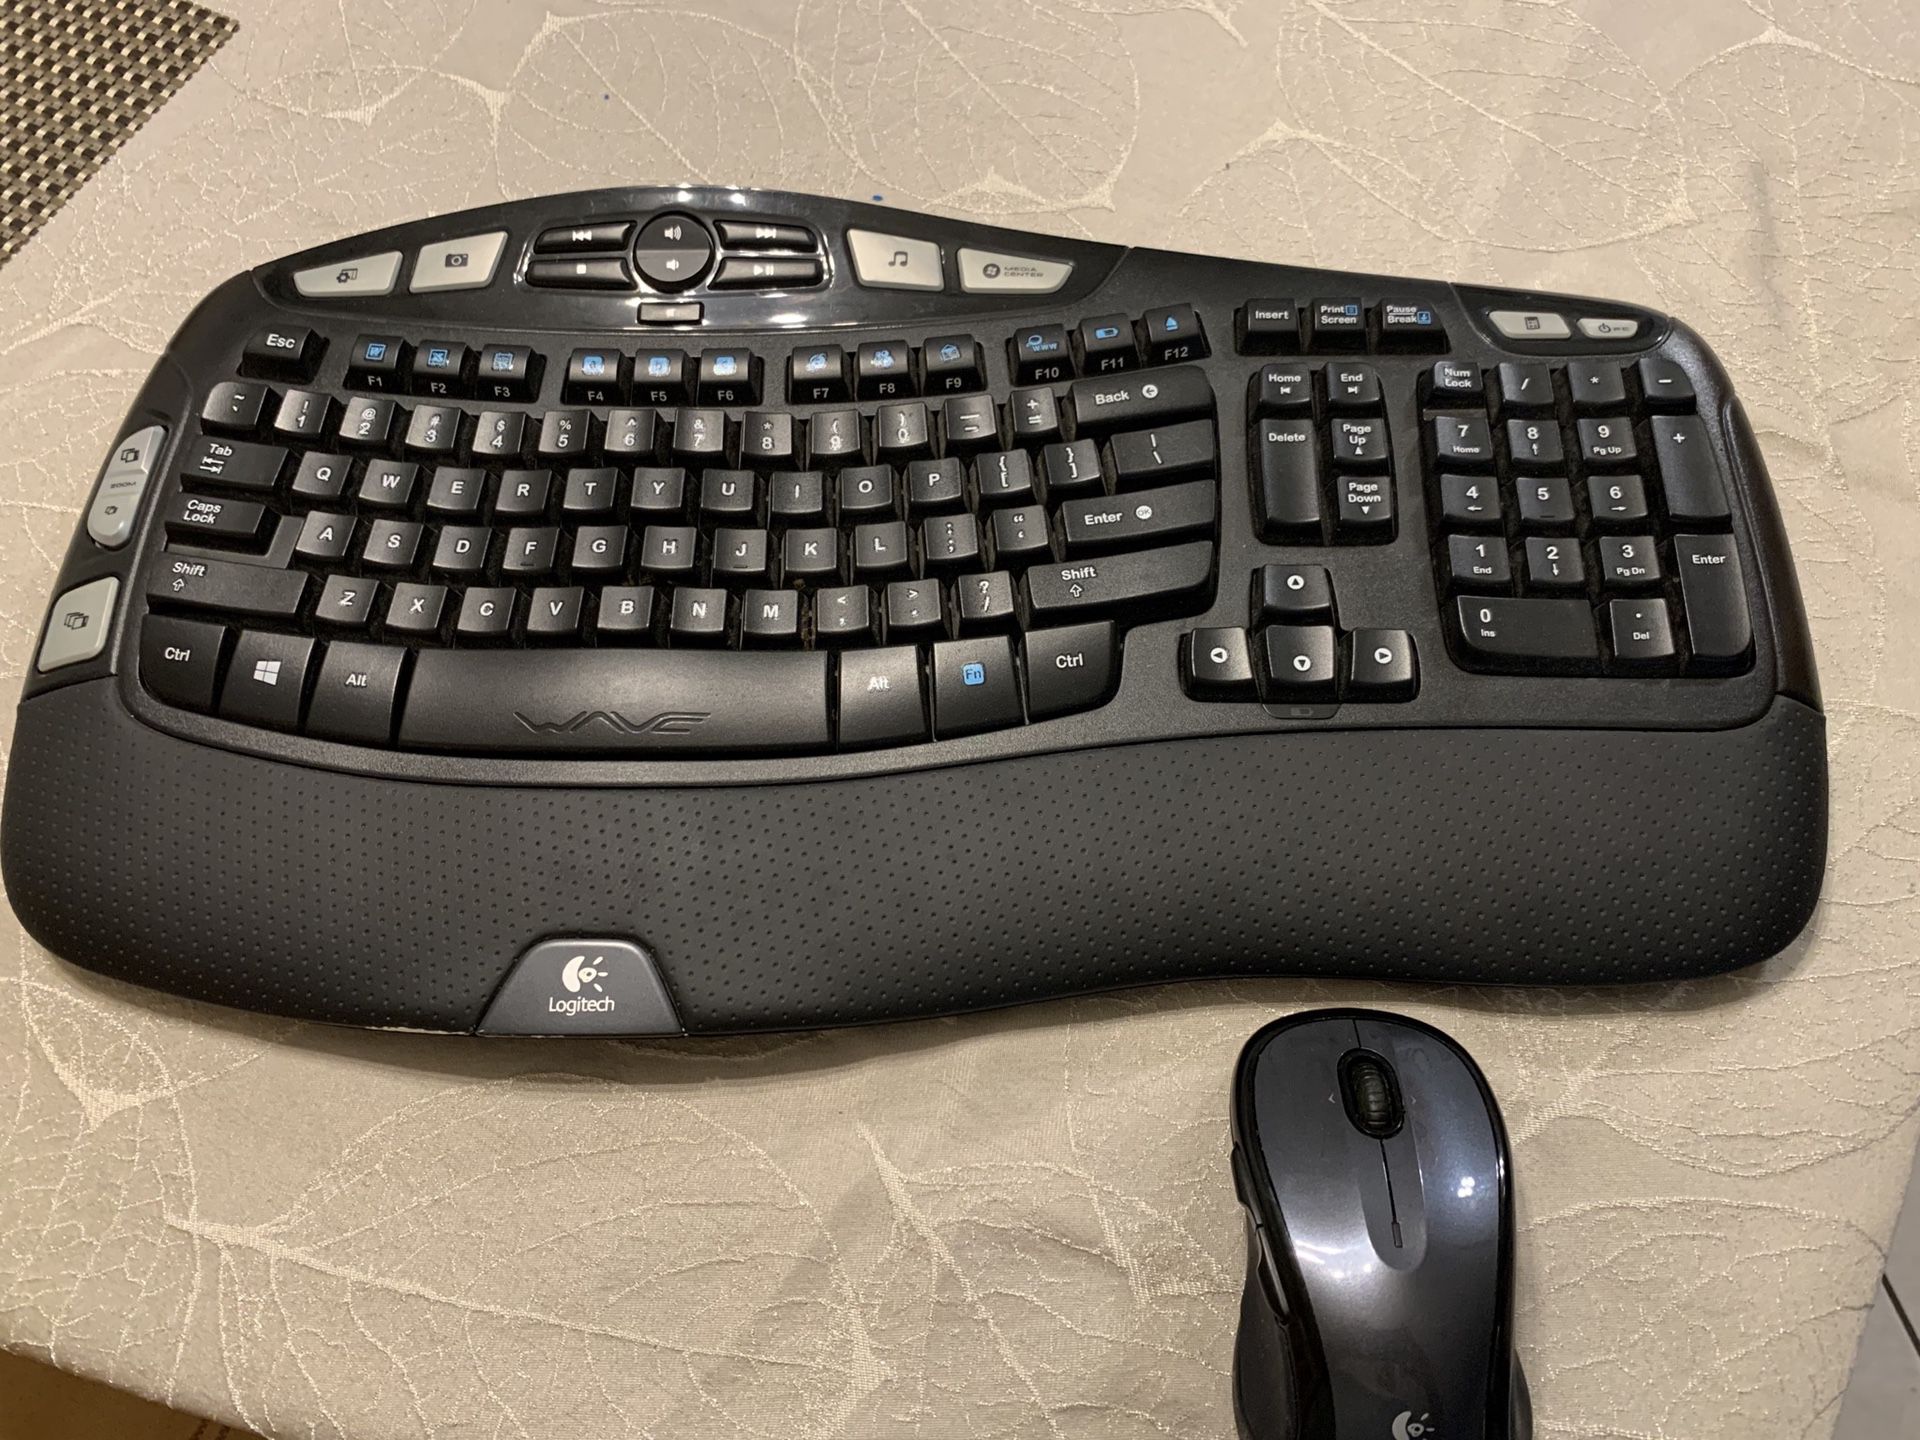 Keyboard k350 and Mouse M510 Logitech wireless